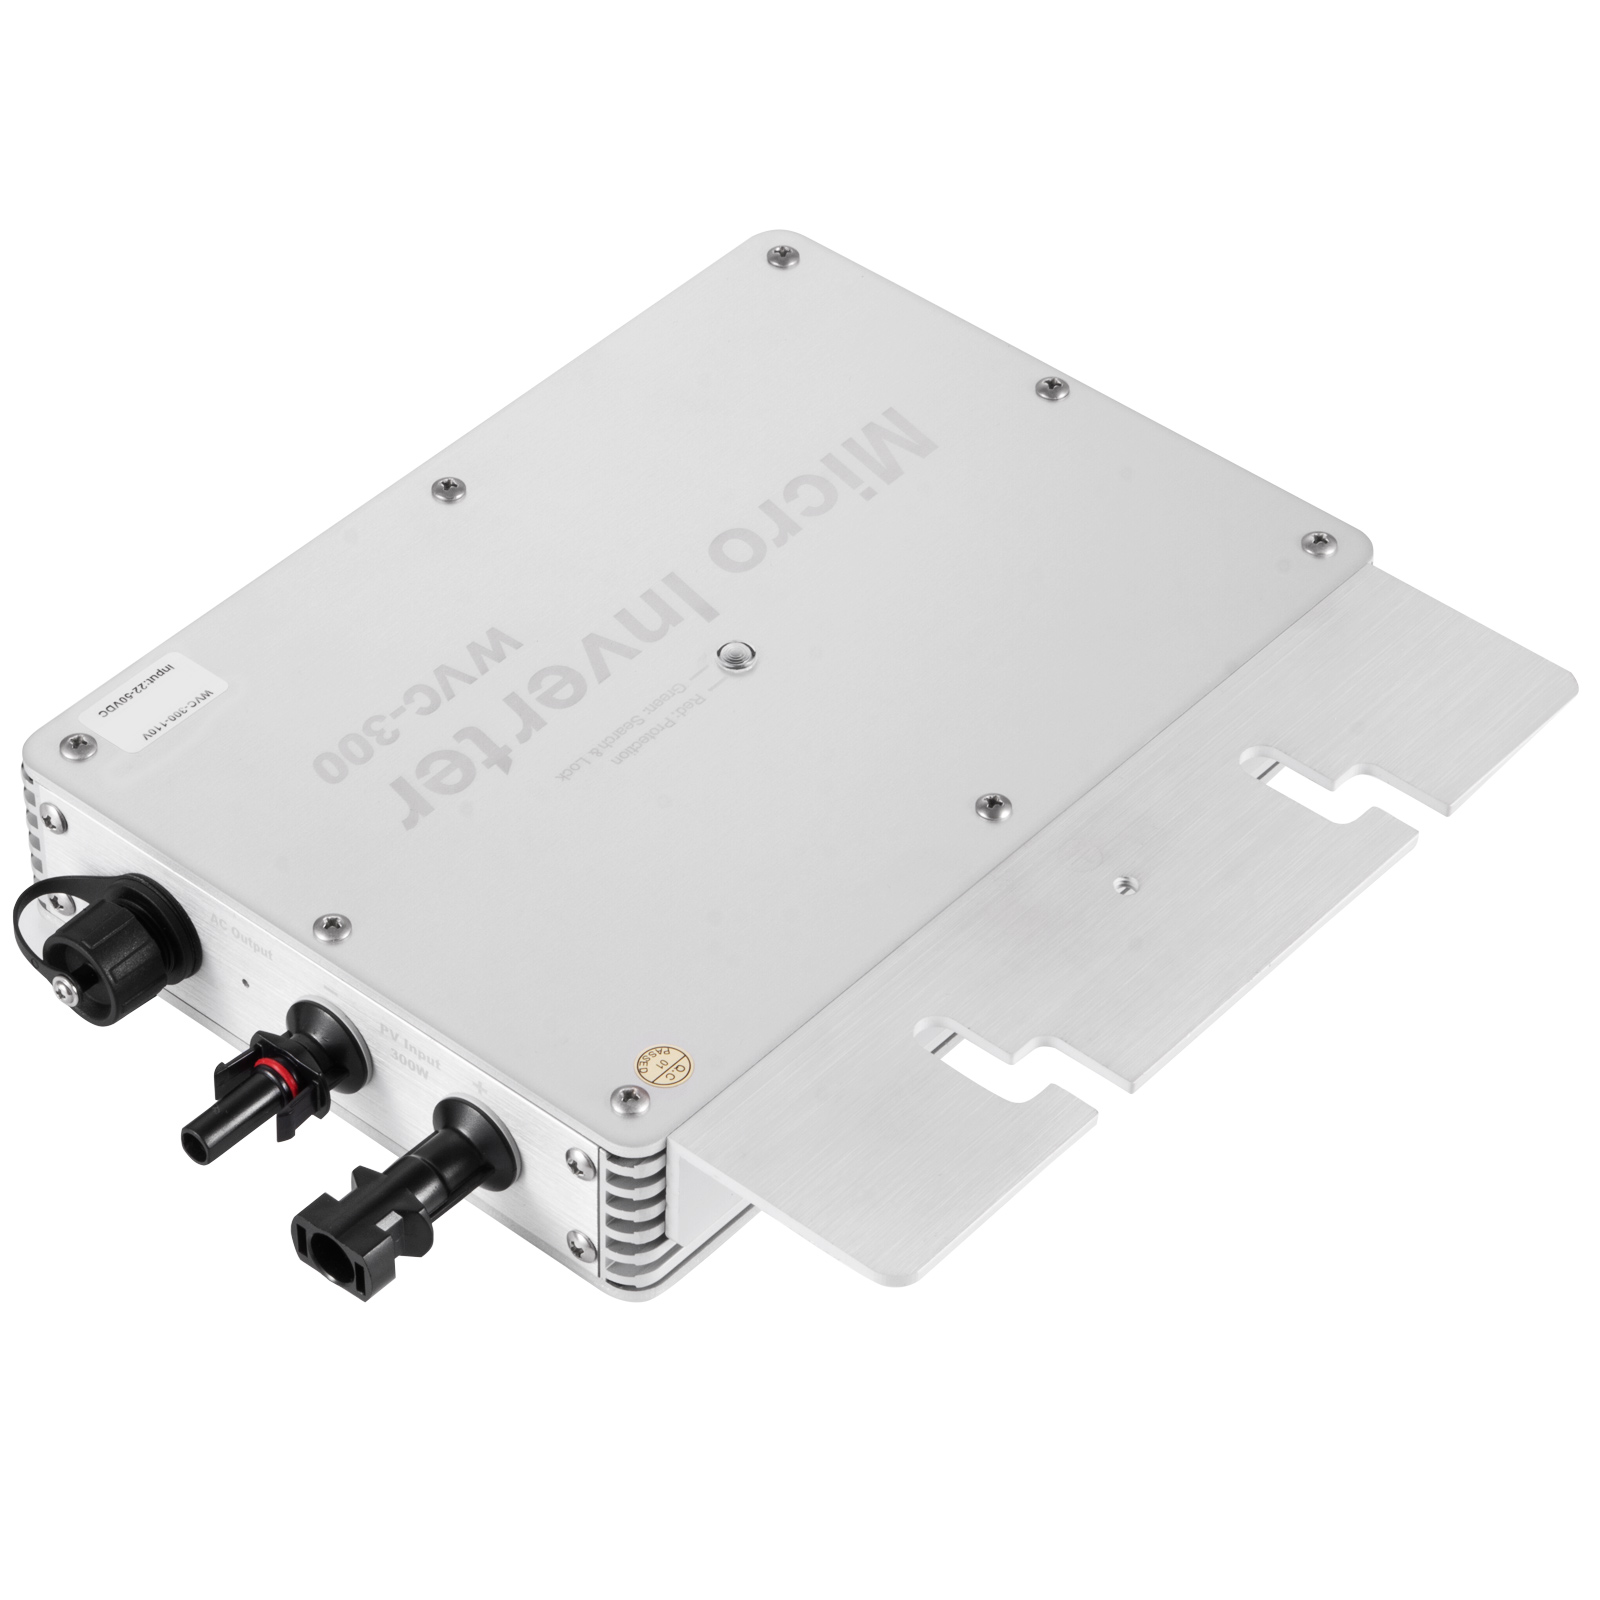 Wasserdichter Mikro Wechselrichter MPPT 1200W Solar Grid Tie Micro Inverter IP65 